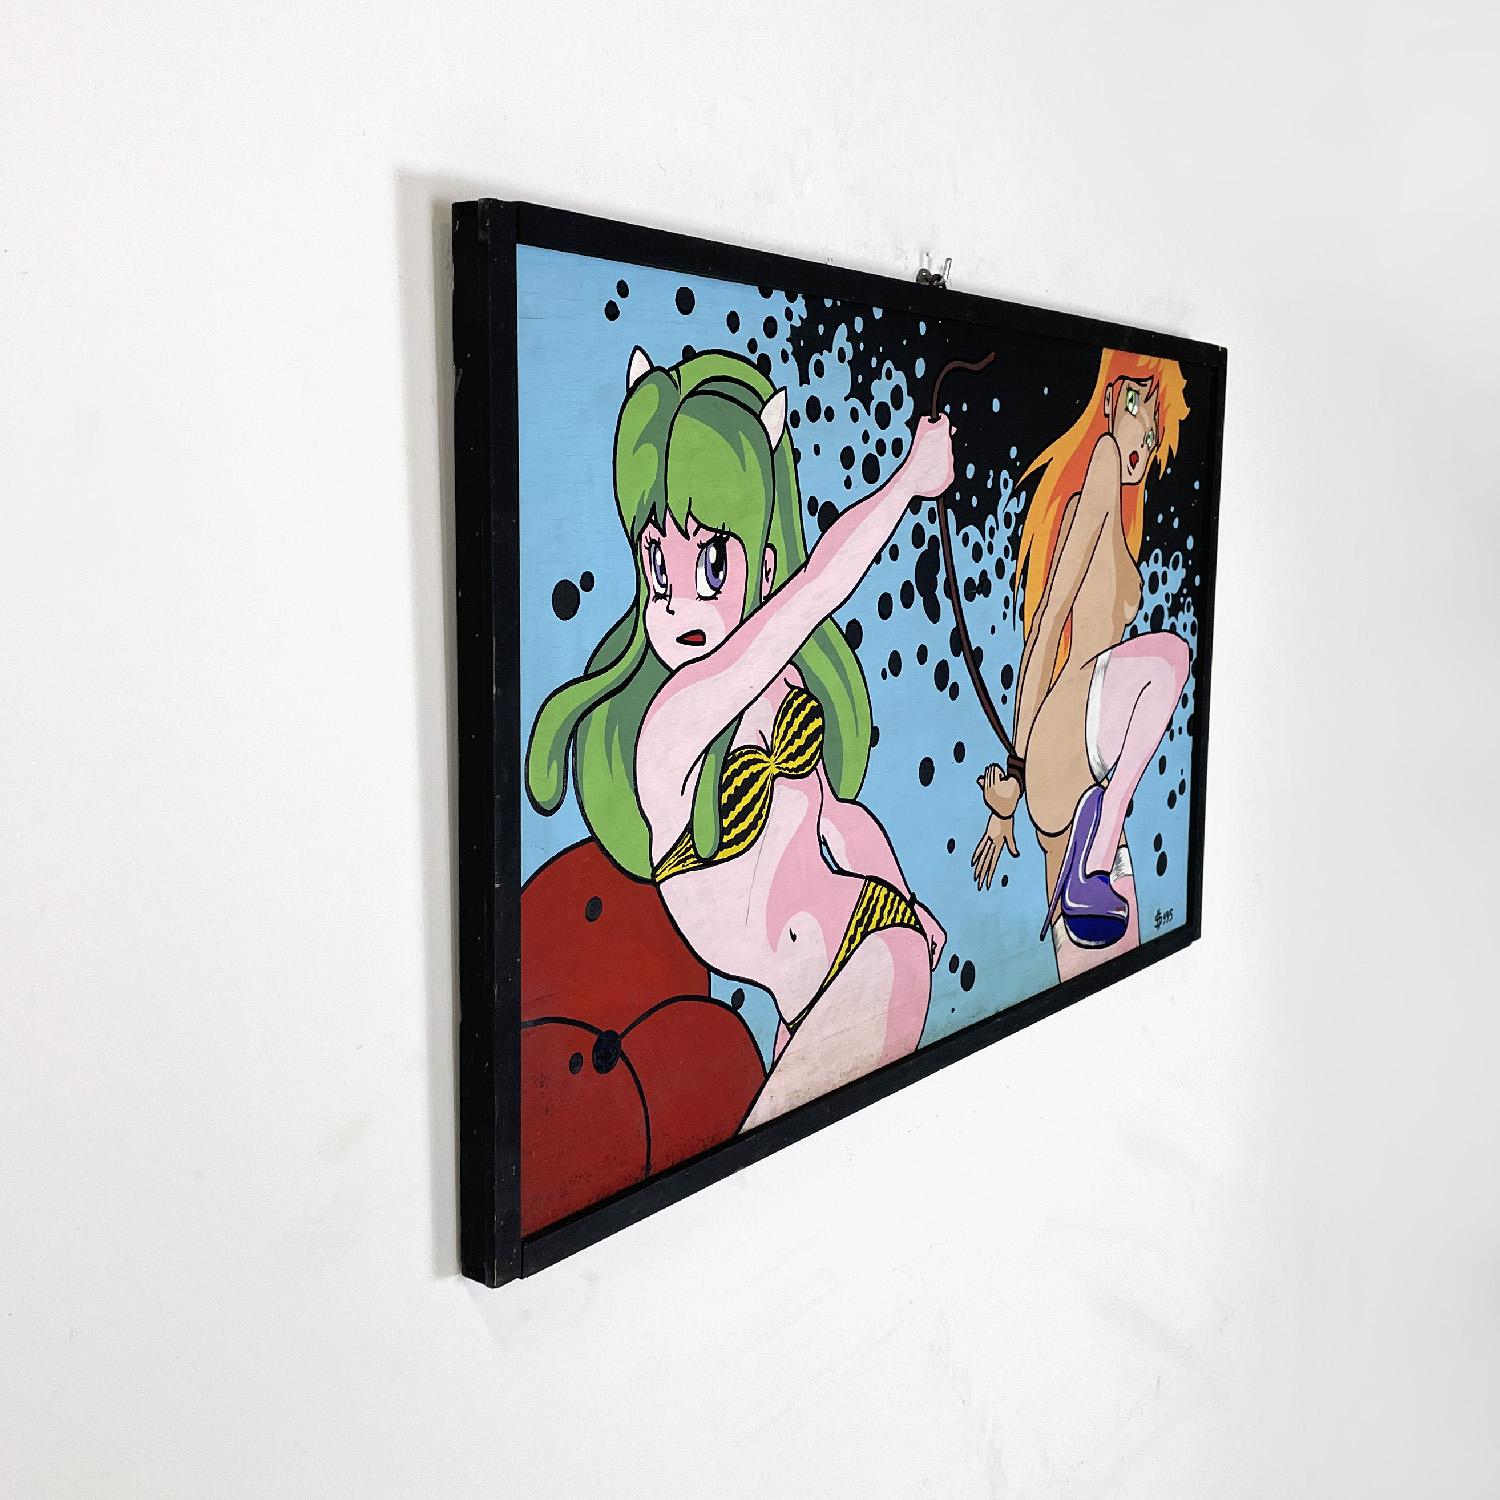 Peinture de manga japonaise moderne et érotique de Gianni S99, années 1990
Peinture acrylique sur panneau à thème érotique, représentant des personnages emblématiques de la culture pop manga japonaise. La composition présente des couleurs vives et